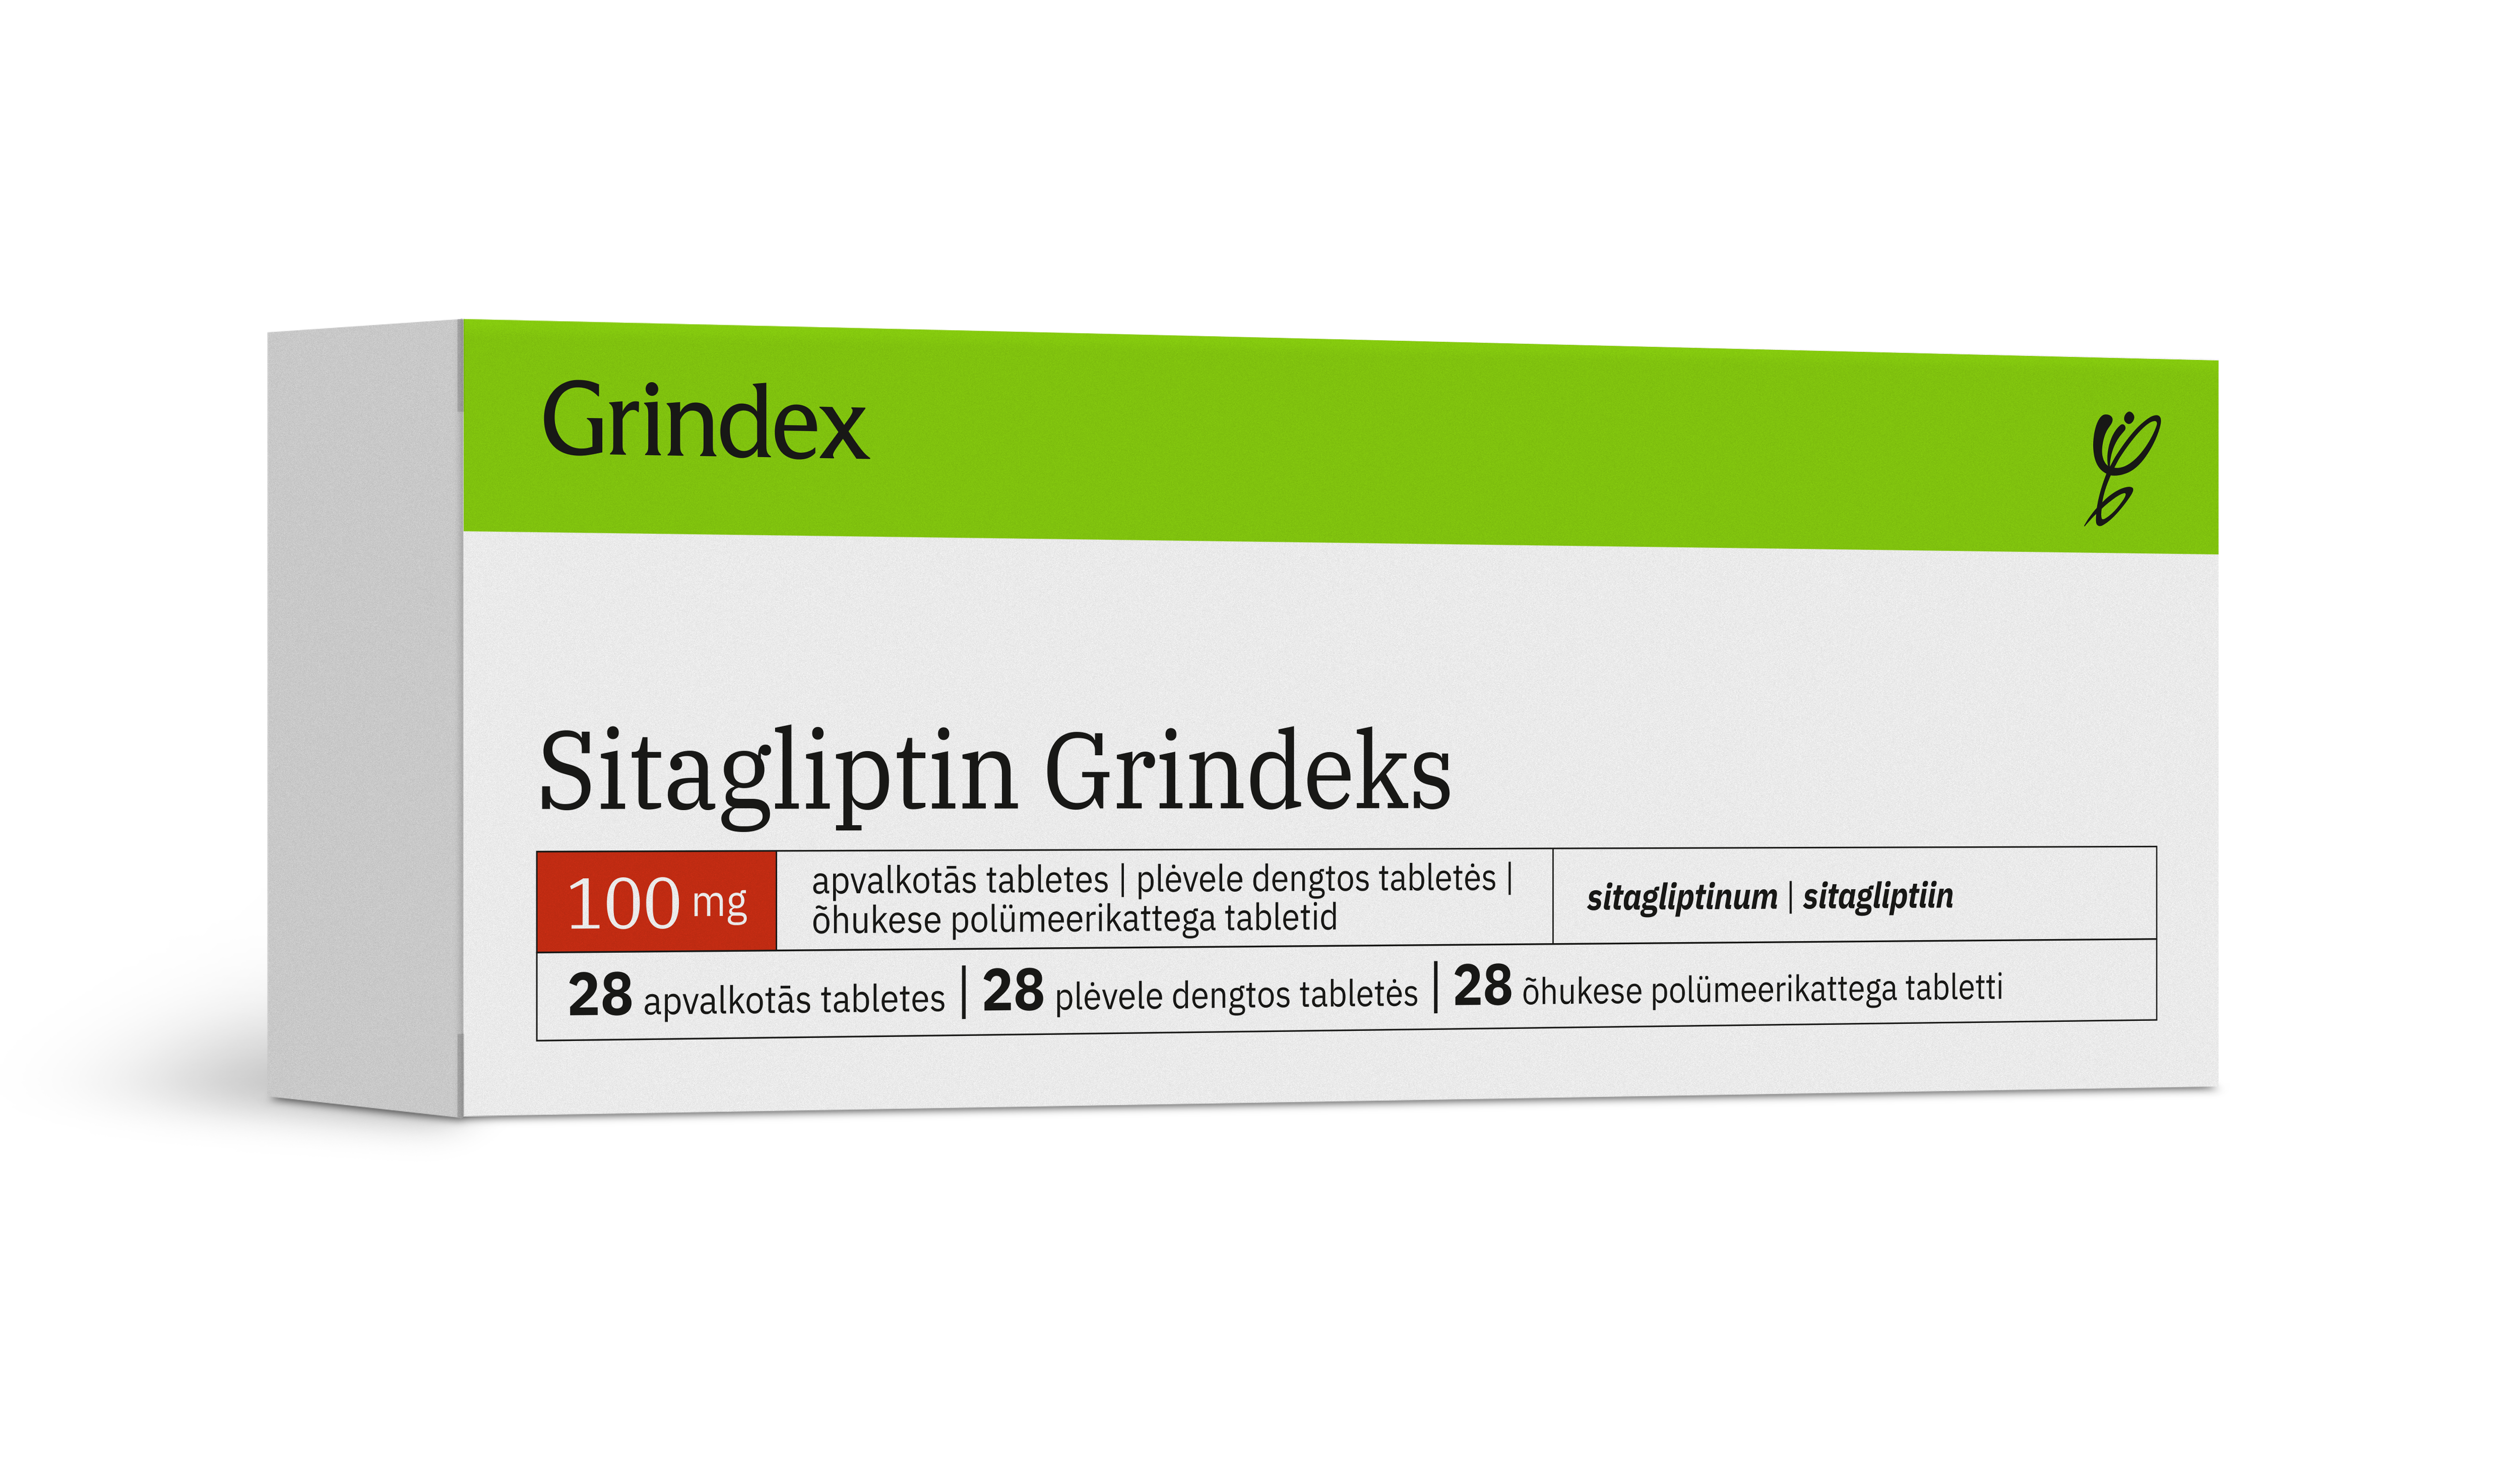 სიტაგლიპტინ გრინდექსი / Sitagliptin Grindeks